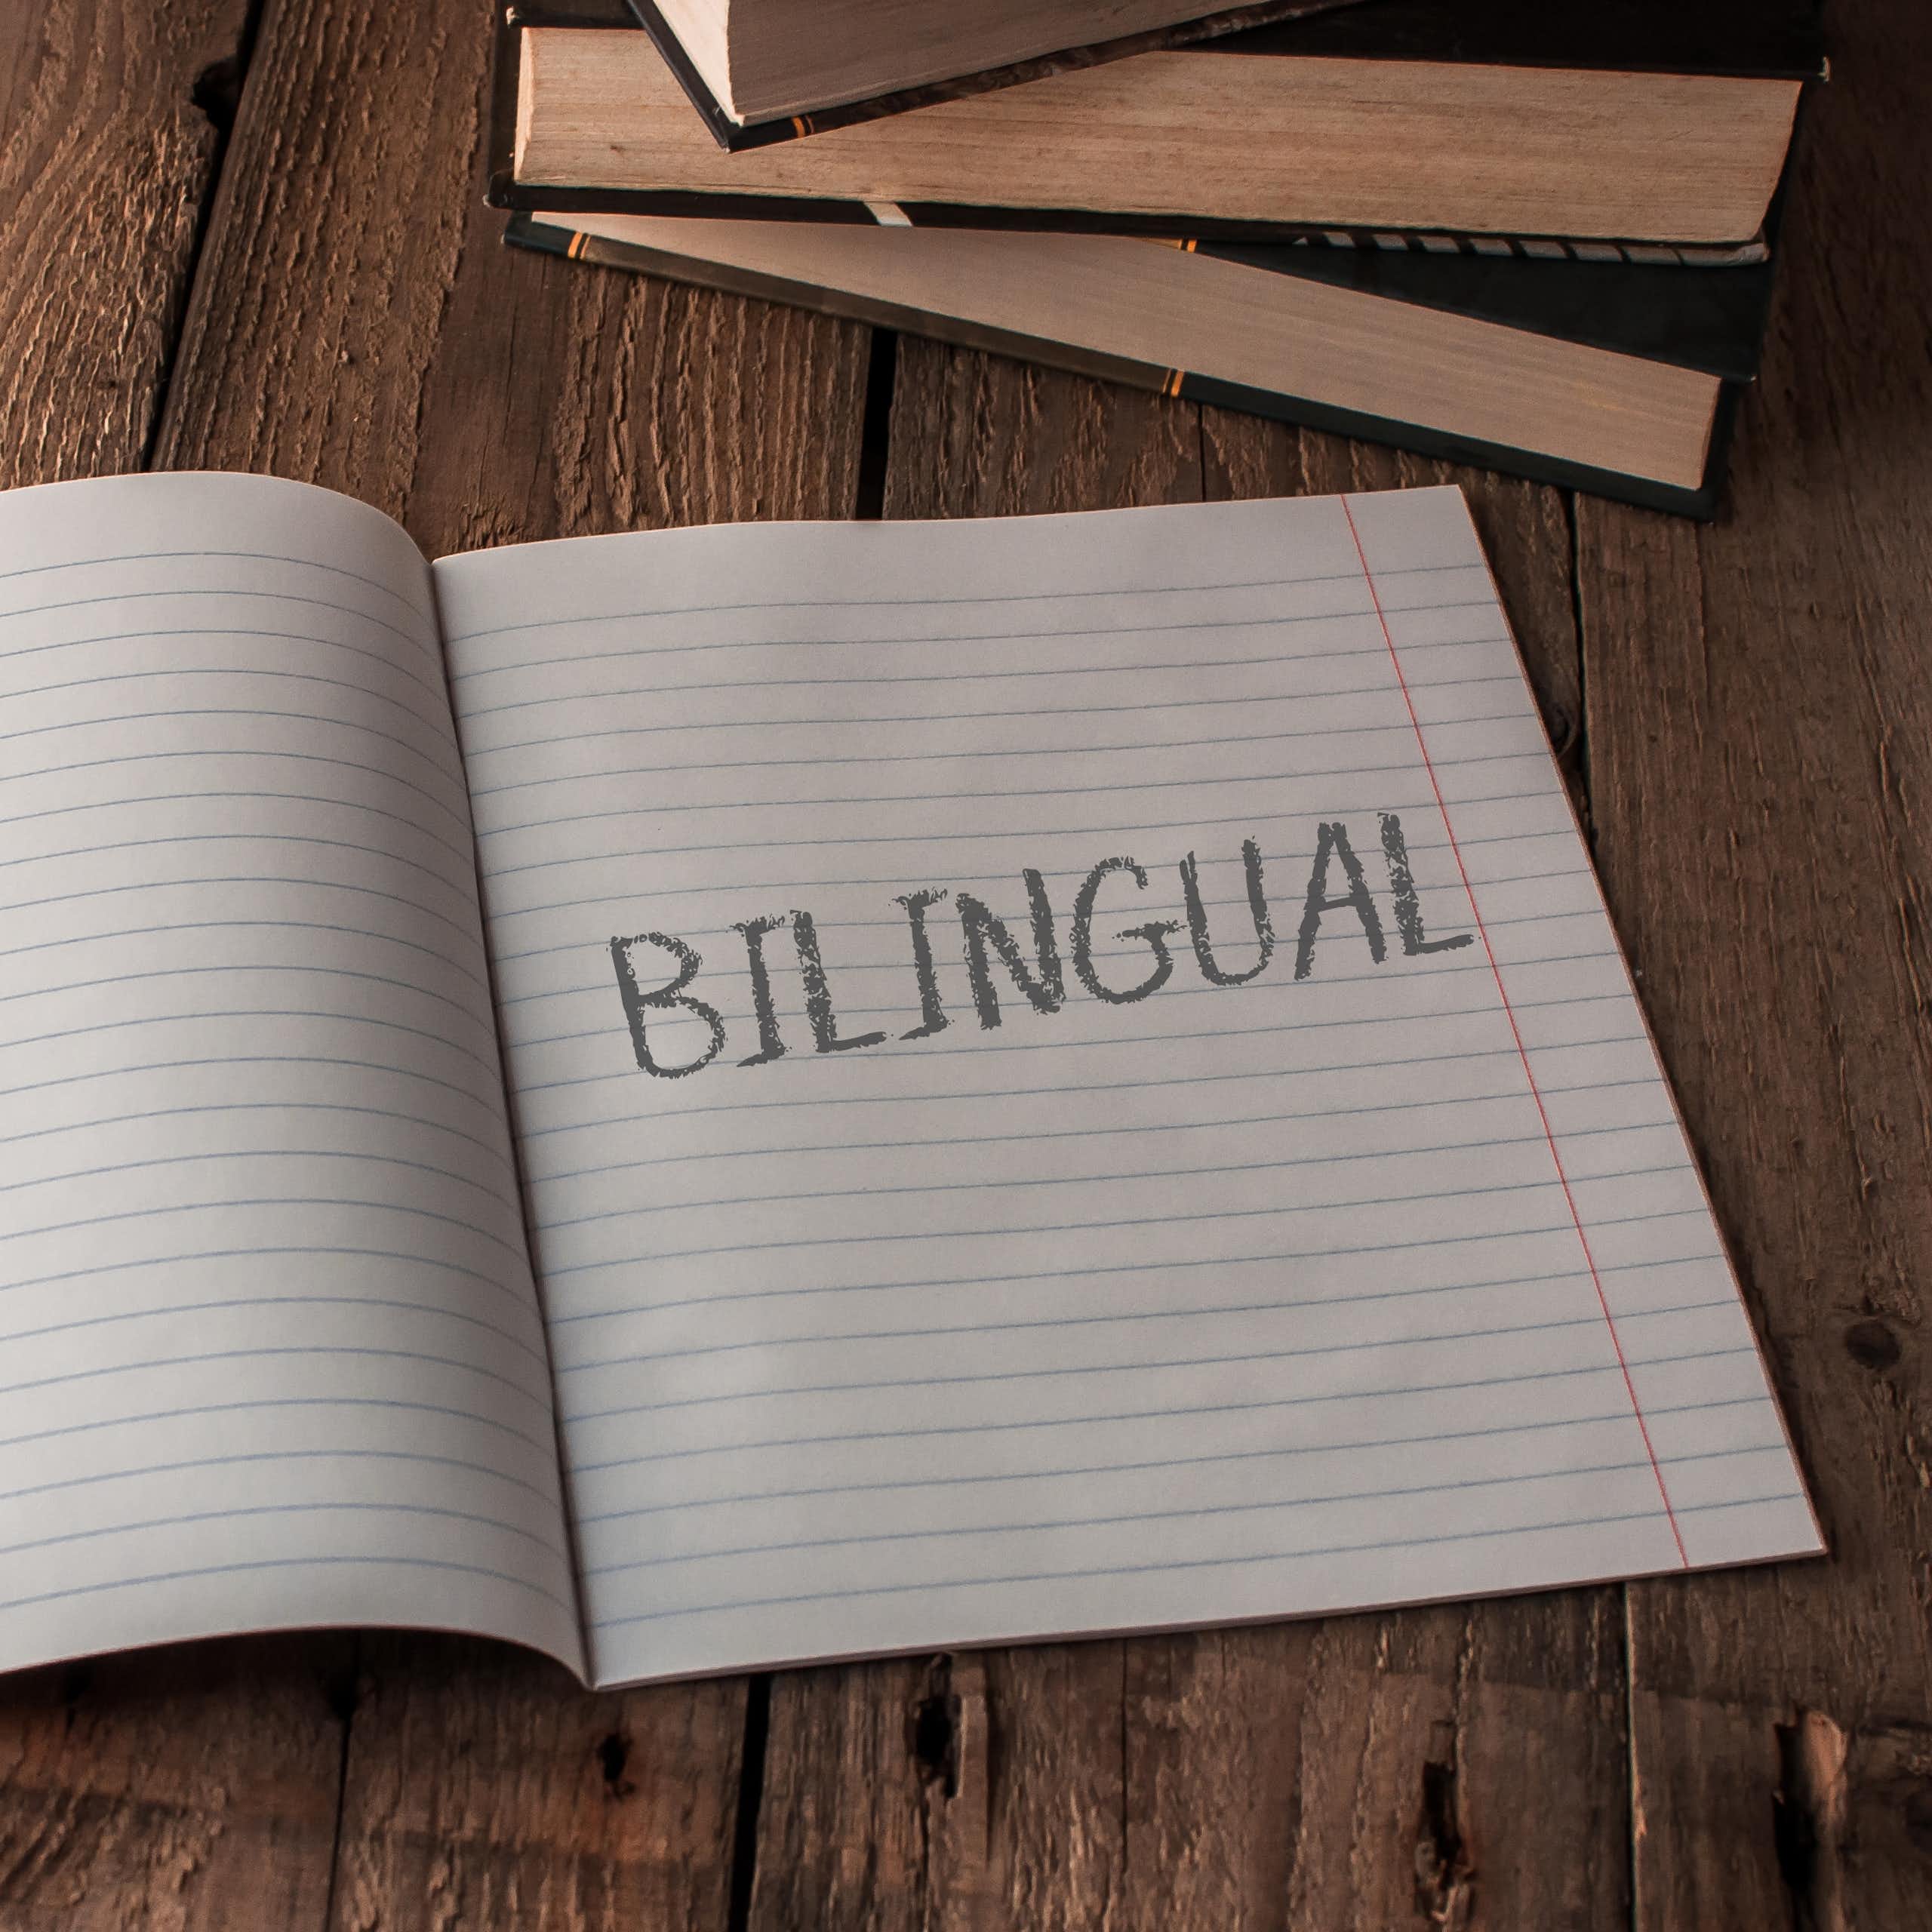 Las ventajas de la educación bilingüe, según los estudiantes